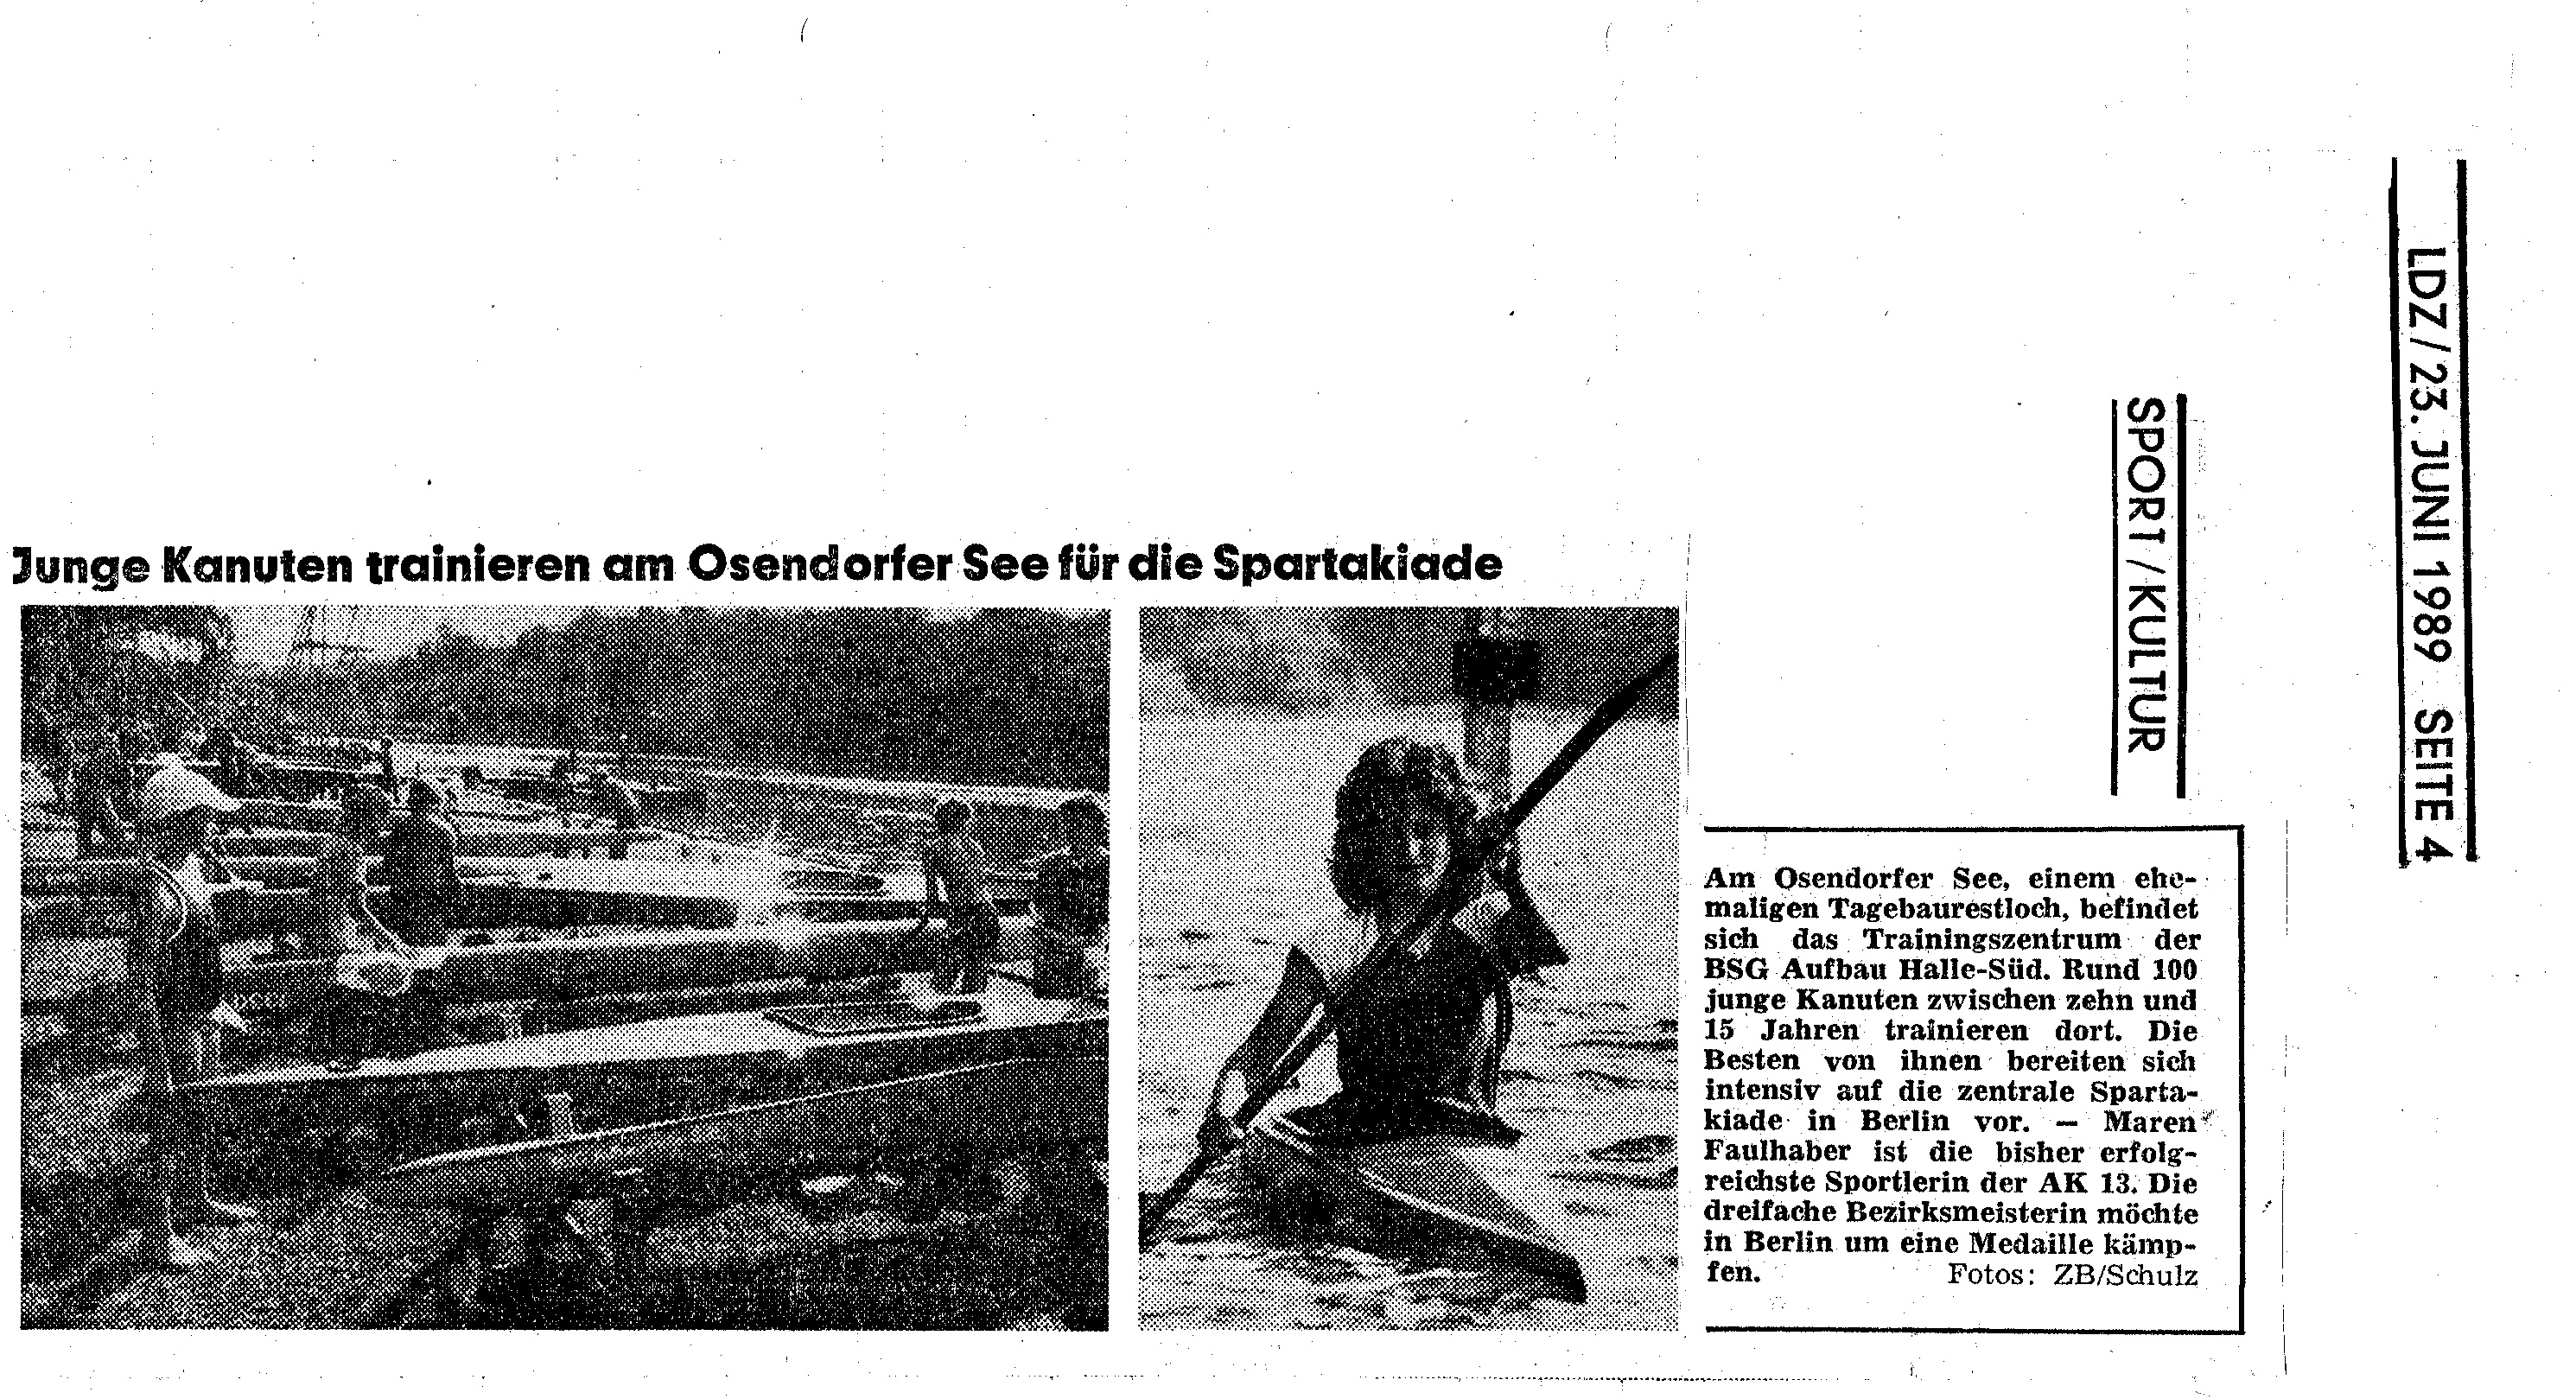 1989-06-23 Junge Kanuten trainieren am Osendorfer See für die Spartakiade